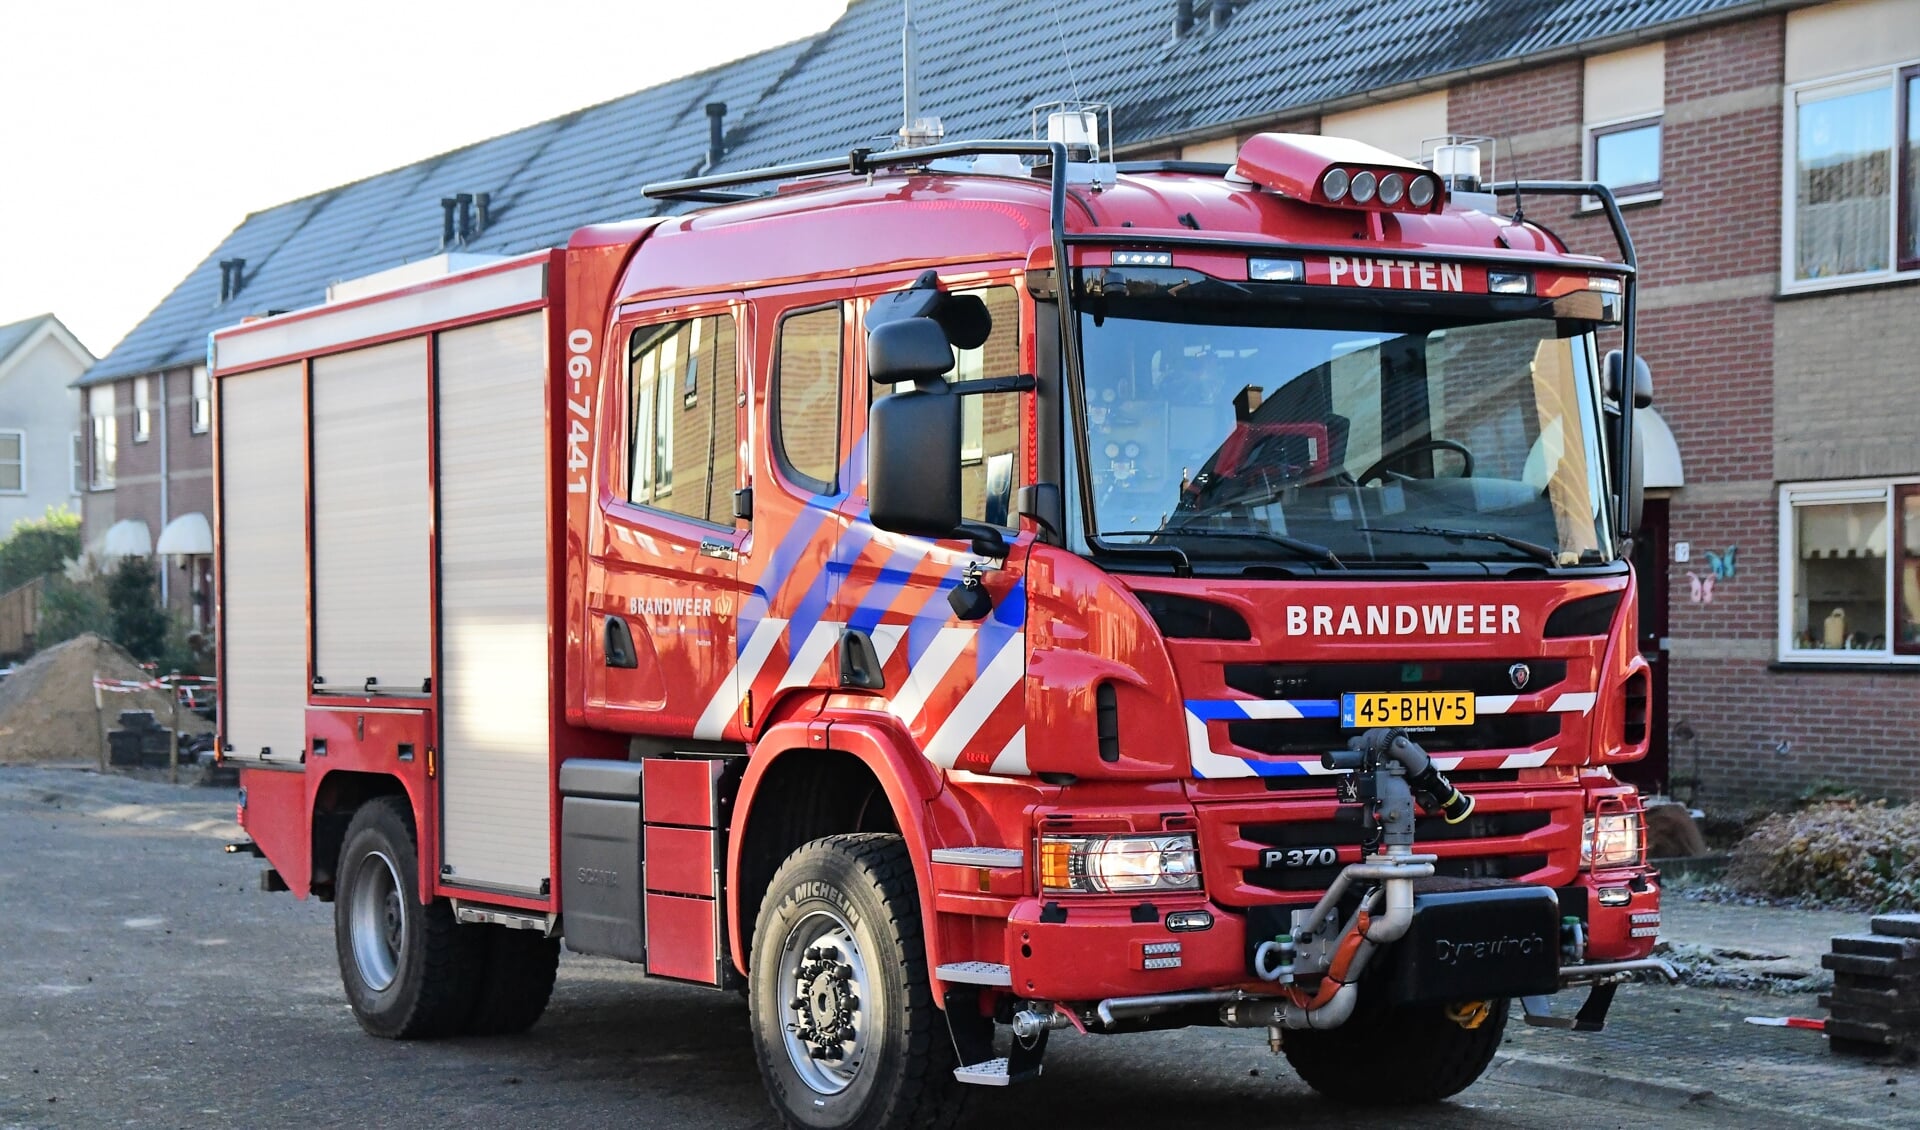 Postcommandant van de Brandweer Putten: ,,Niet meer zelf verantwoordelijk zijn voor een middelbrandscenario is onbegrijpelijk.'' 